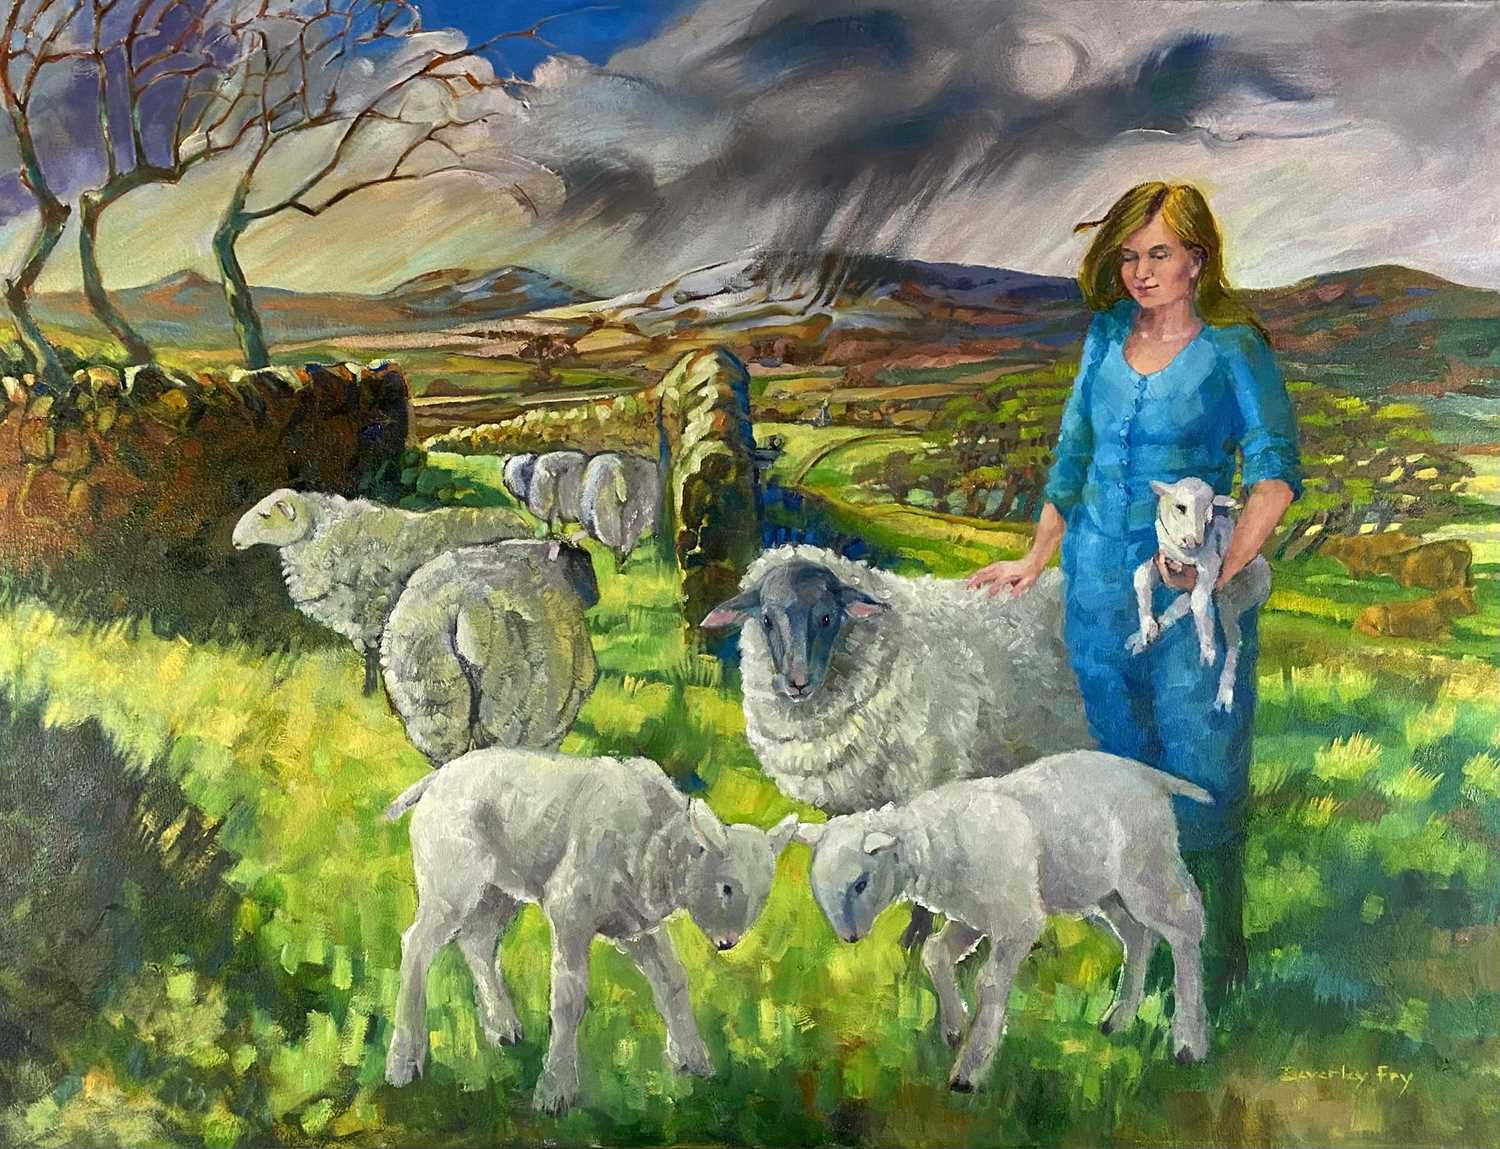 Beverley Fry (b.1948) Shepherdess on Wenlock Edge